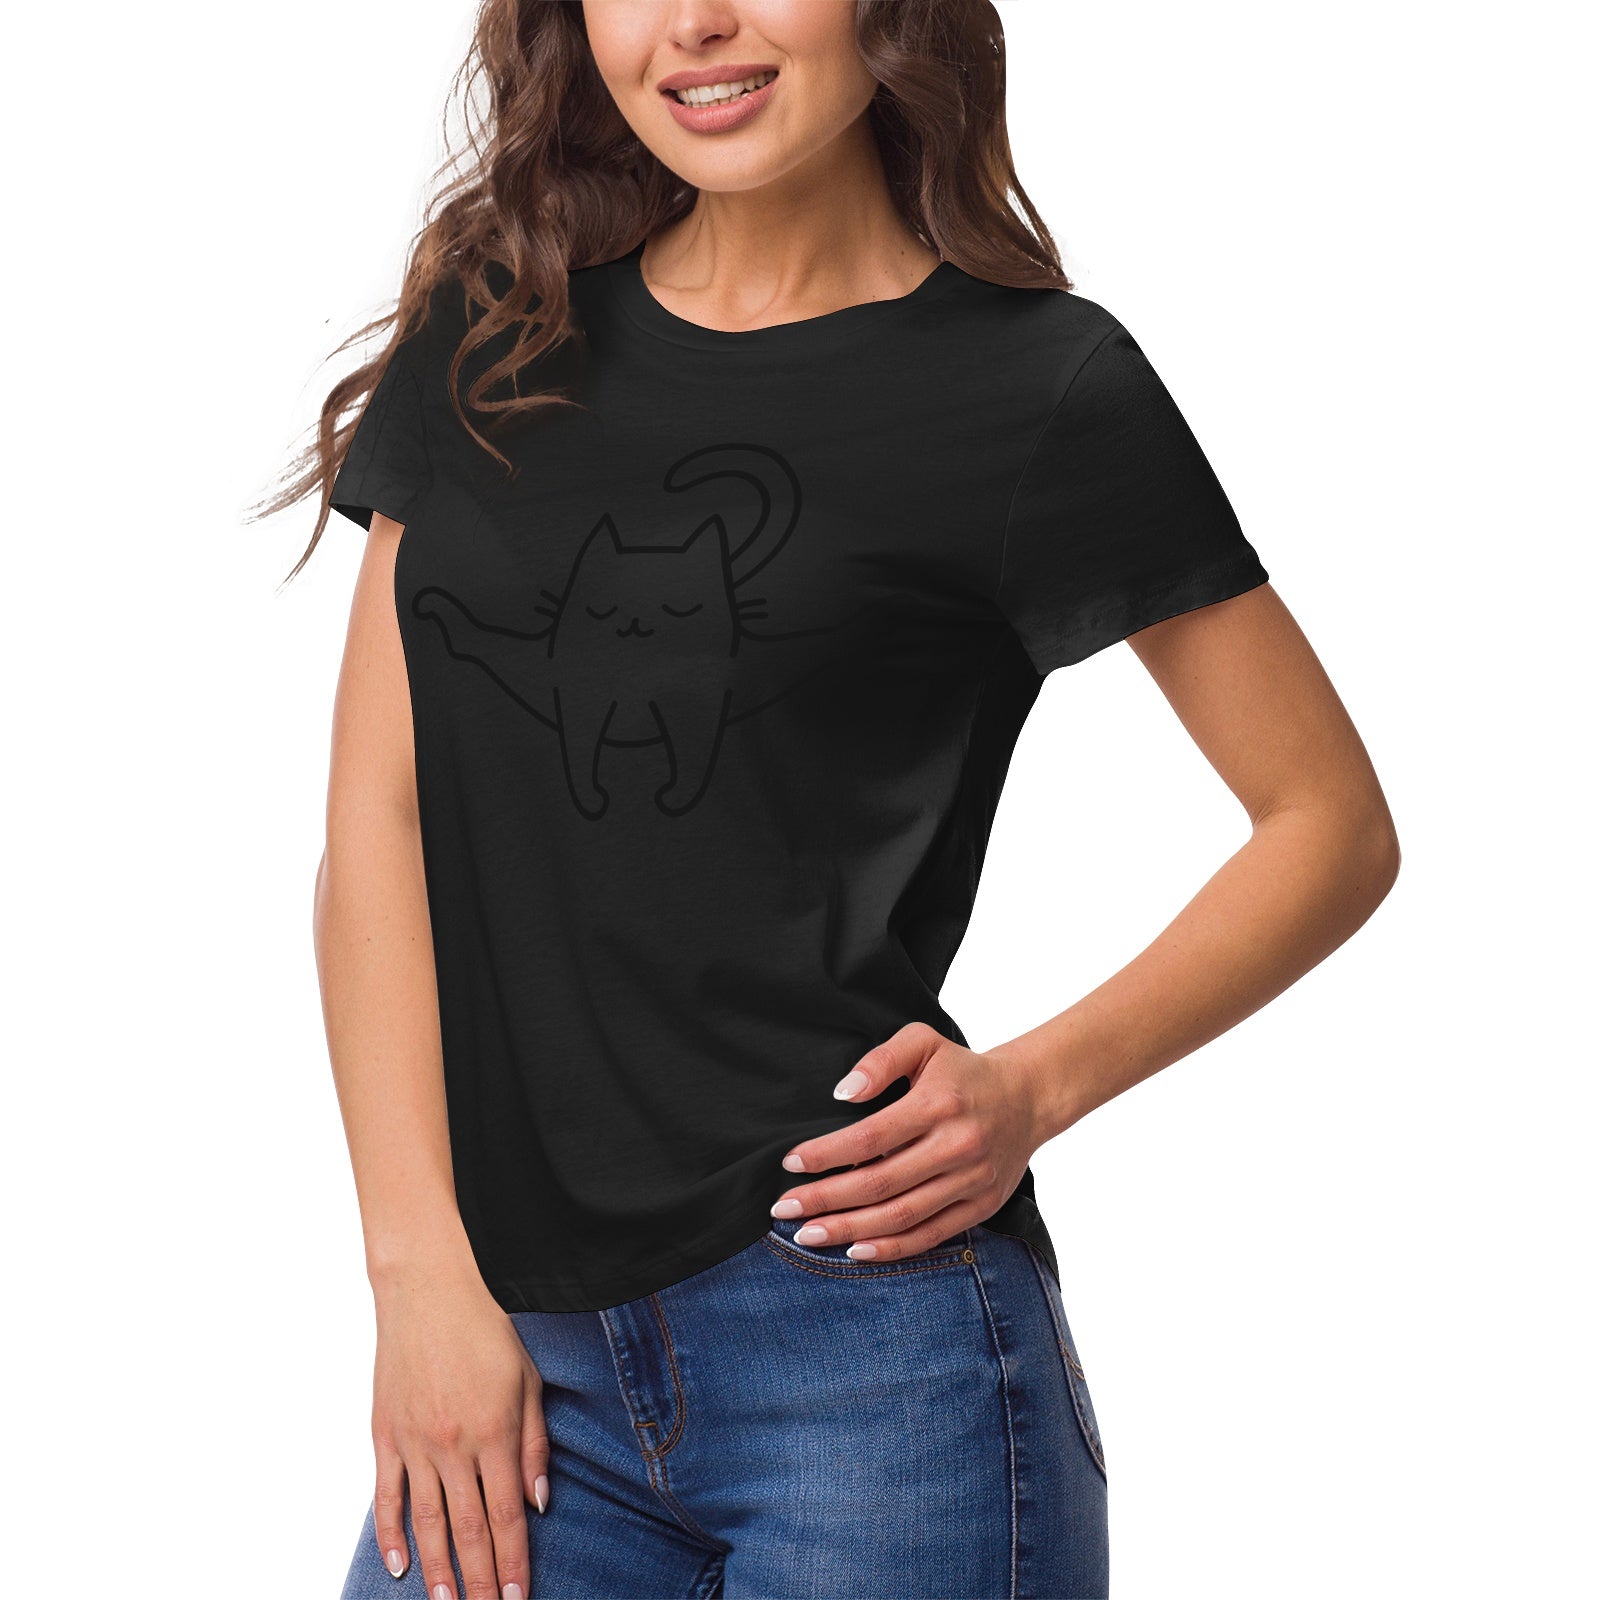 Yoga Cat 3 Women's Ultrasoft Pima Cotton T‑shirt - DromedarShop.com Online Boutique